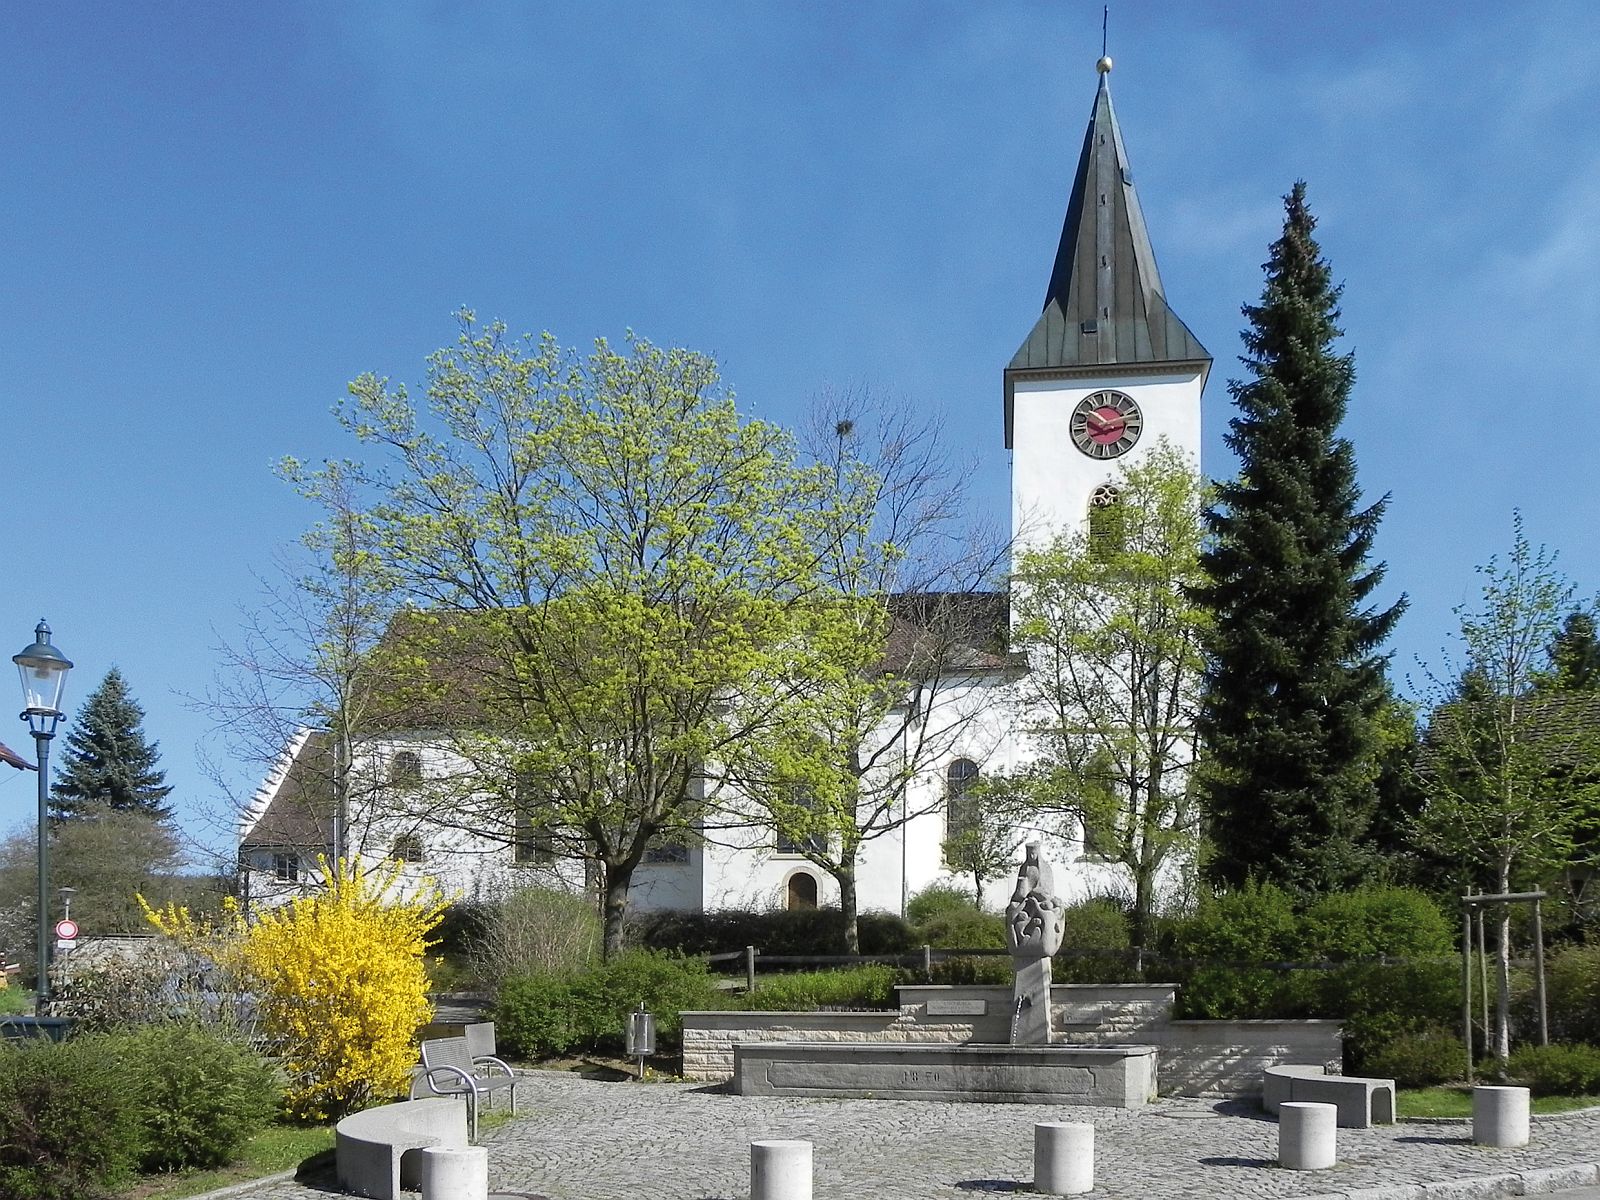                                                     Kirche in Bühl                                    